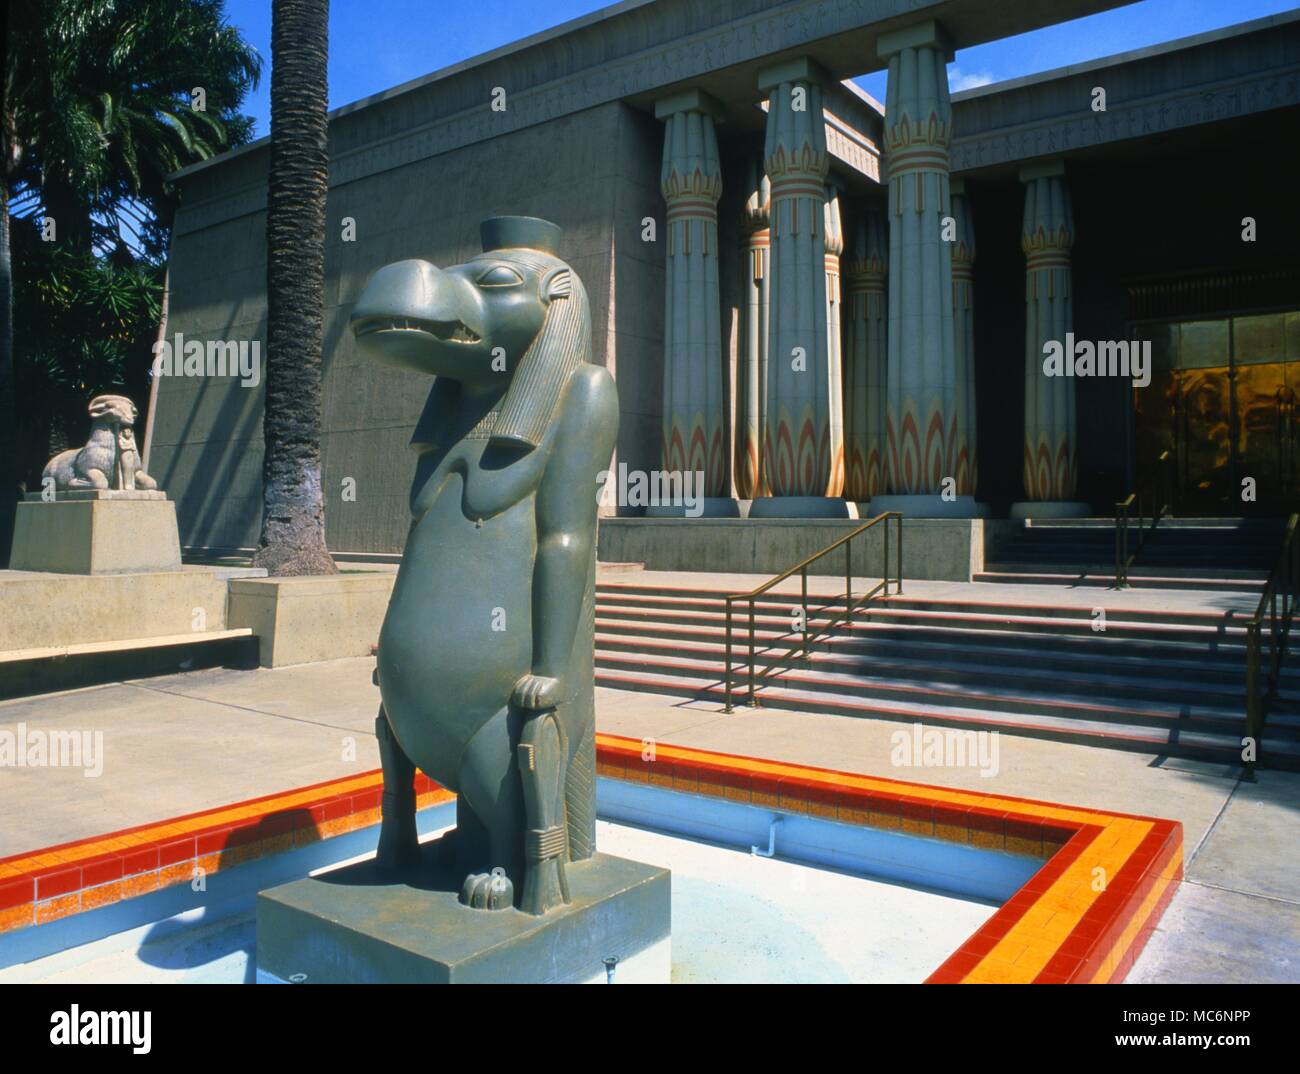 La estatua del dios egipcio, Tauret. Este edificio está ubicado en los terrenos del parque rosacruces, en San José, al sureste de San Francisco. Foto de stock